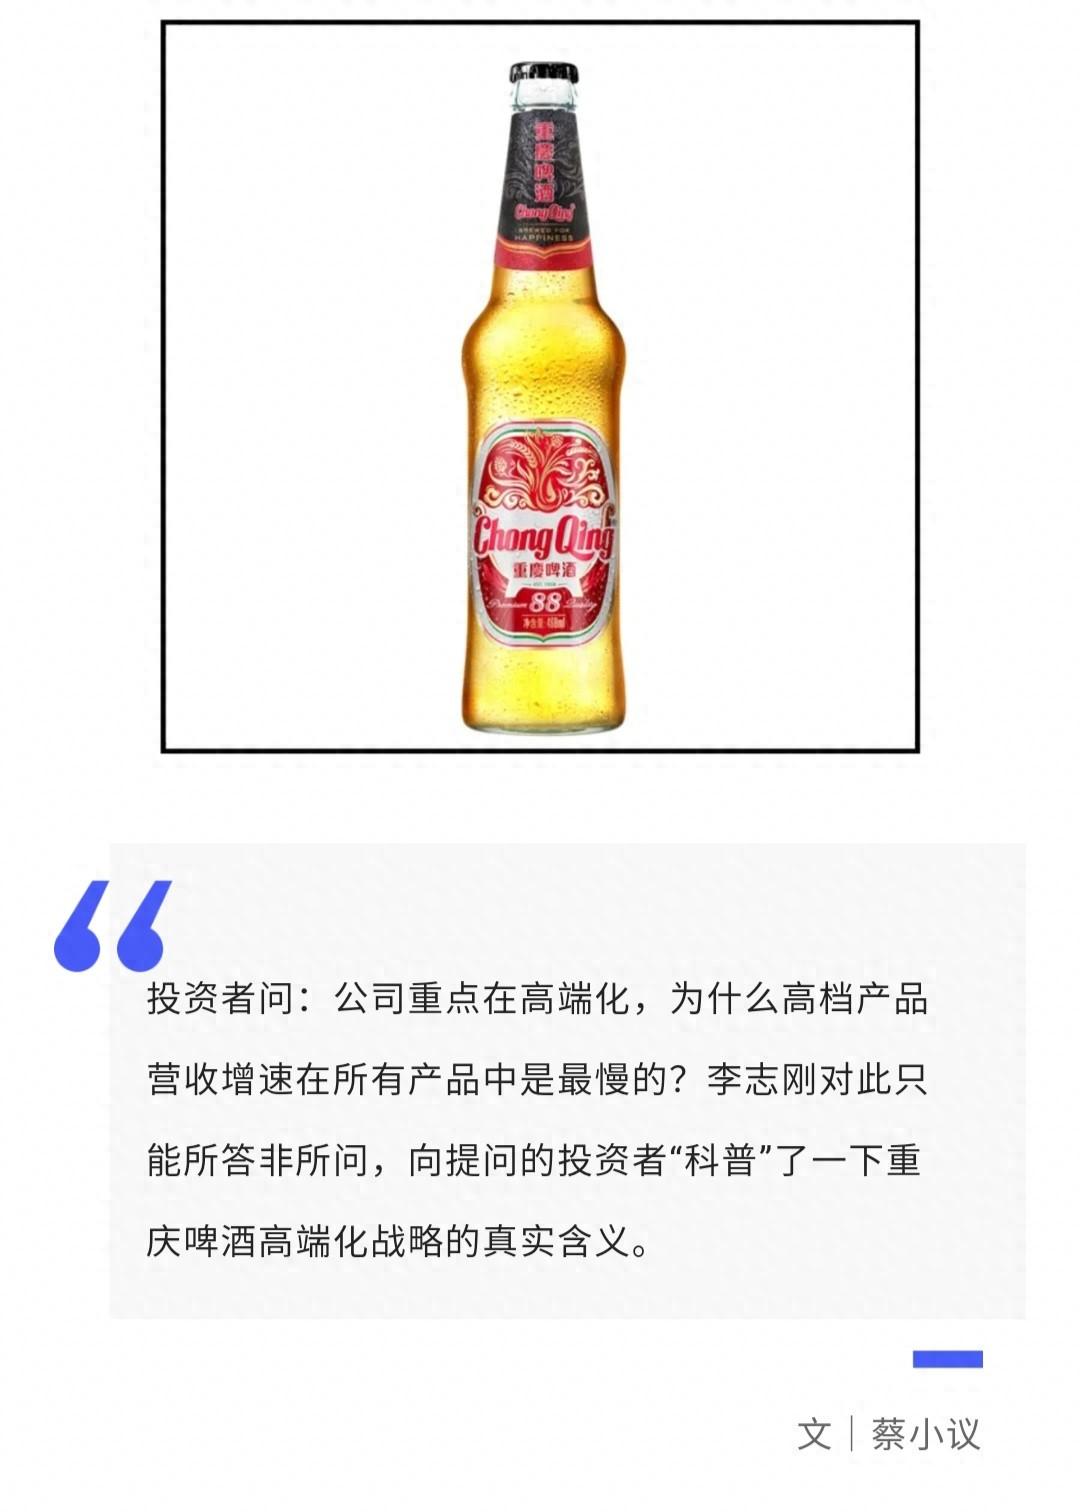 重庆啤酒高端化承压,马来西亚国籍总裁表现出所答非所问